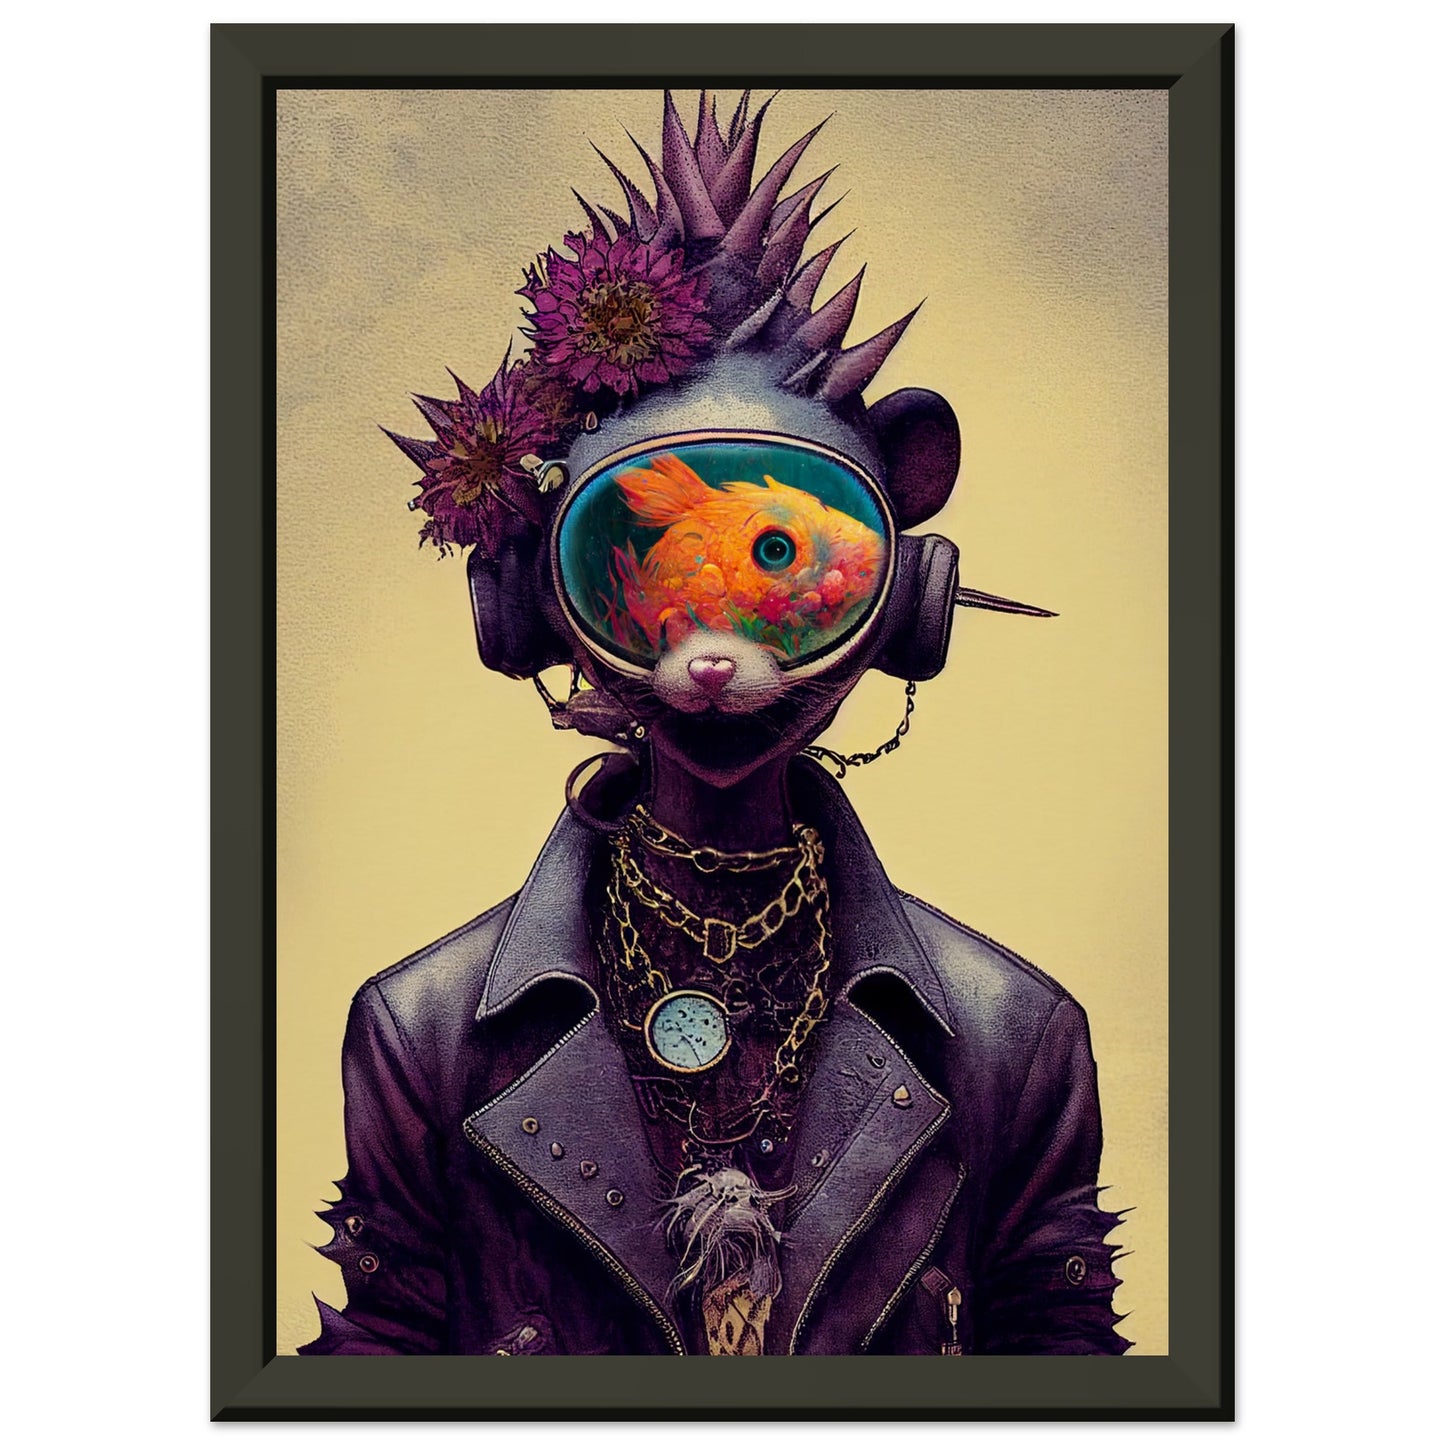 Anthropomorphic flower-punk cat-fish creature